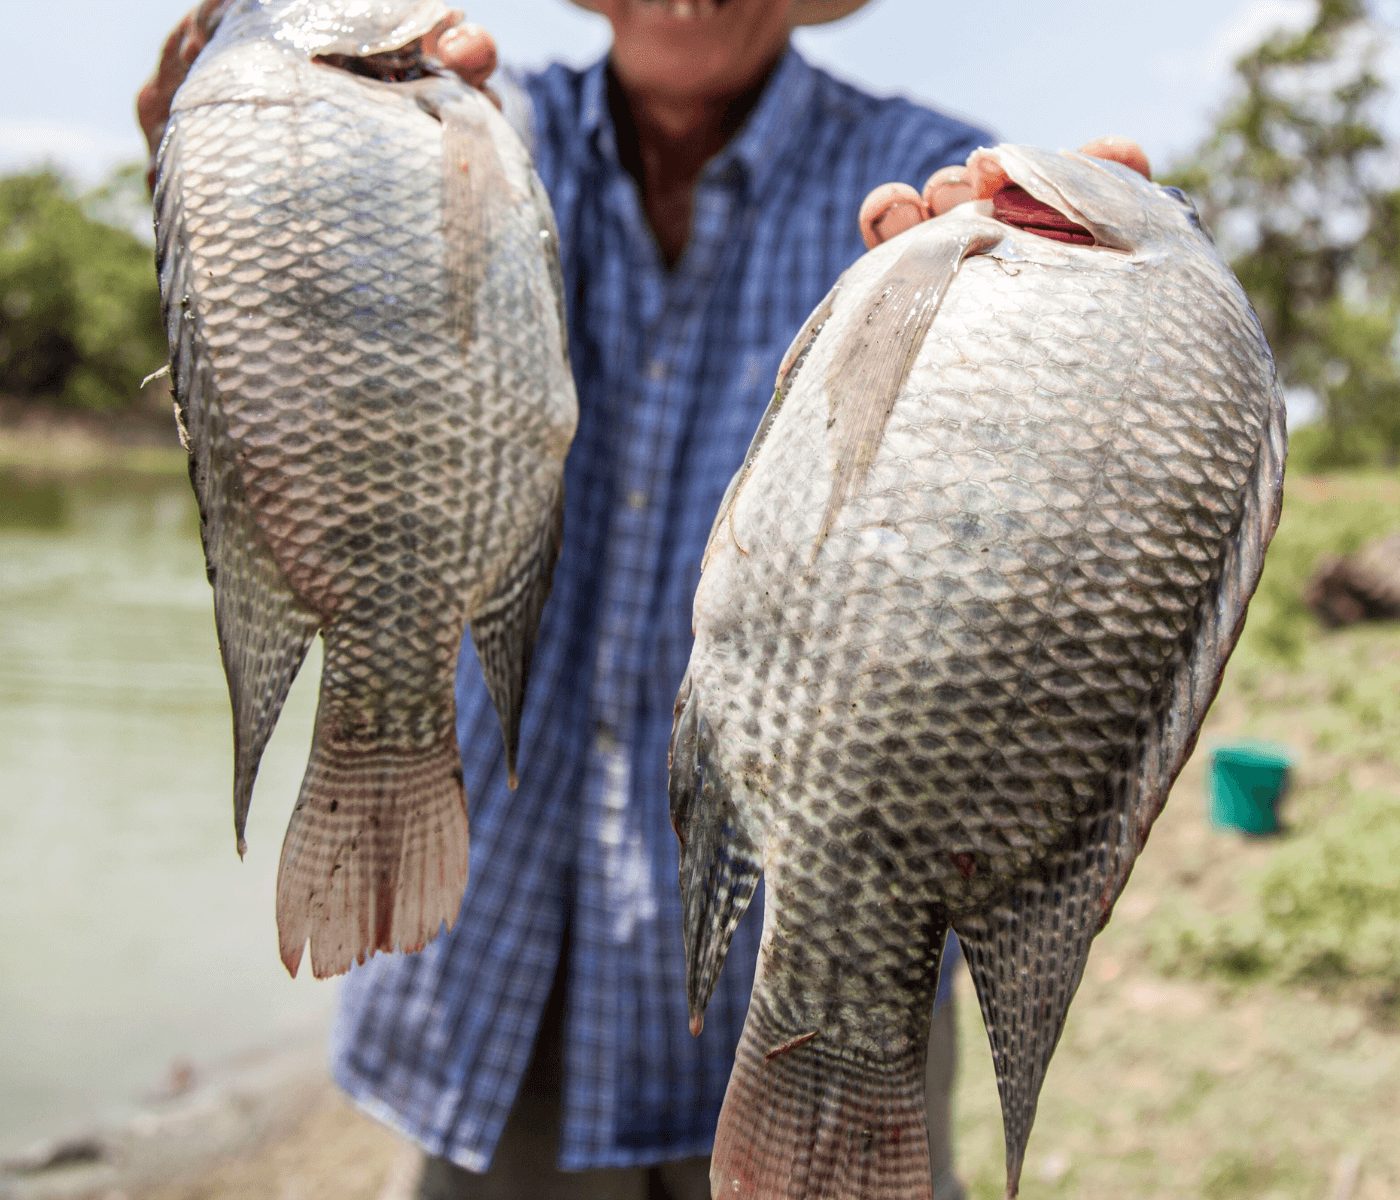 A produção de pescados é decisiva para a segurança alimentar global